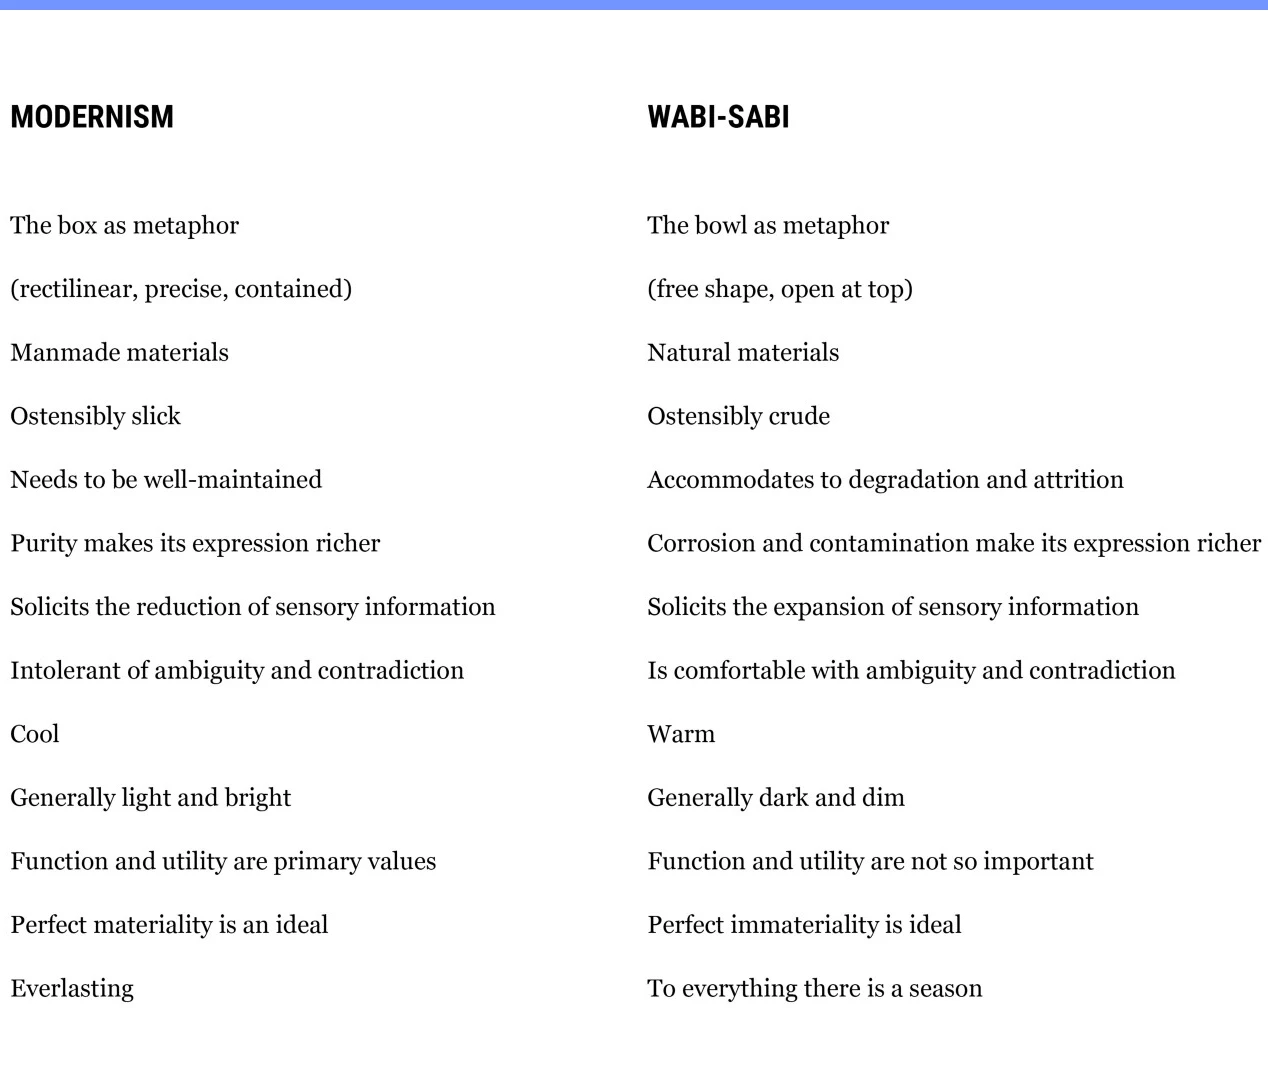 Modernism vs Wabi-Sabi